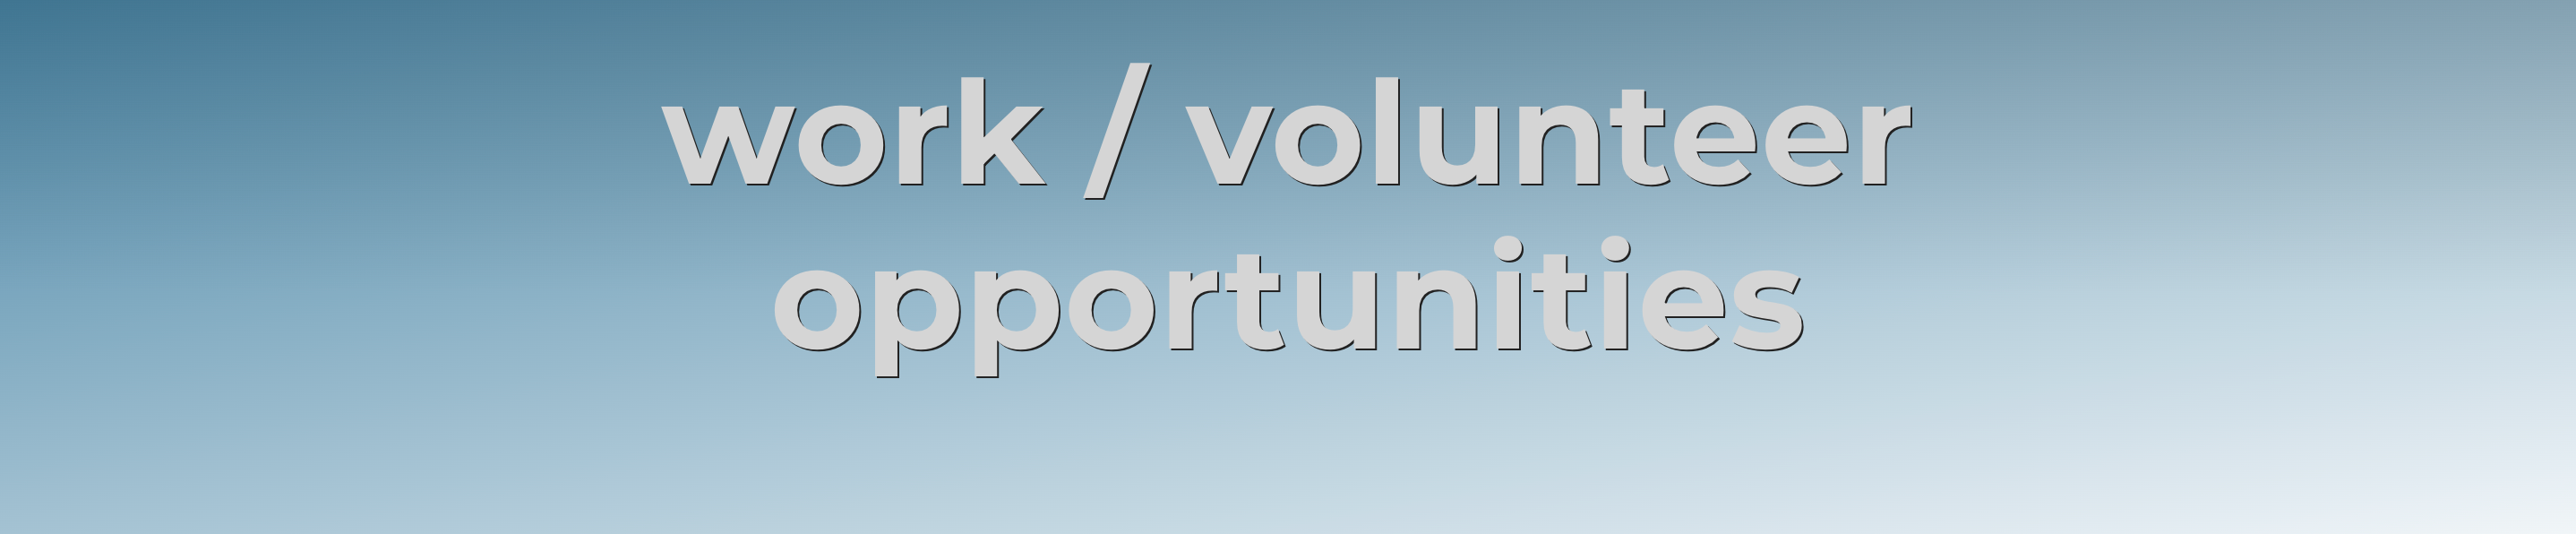 work/ volunteer opportunities